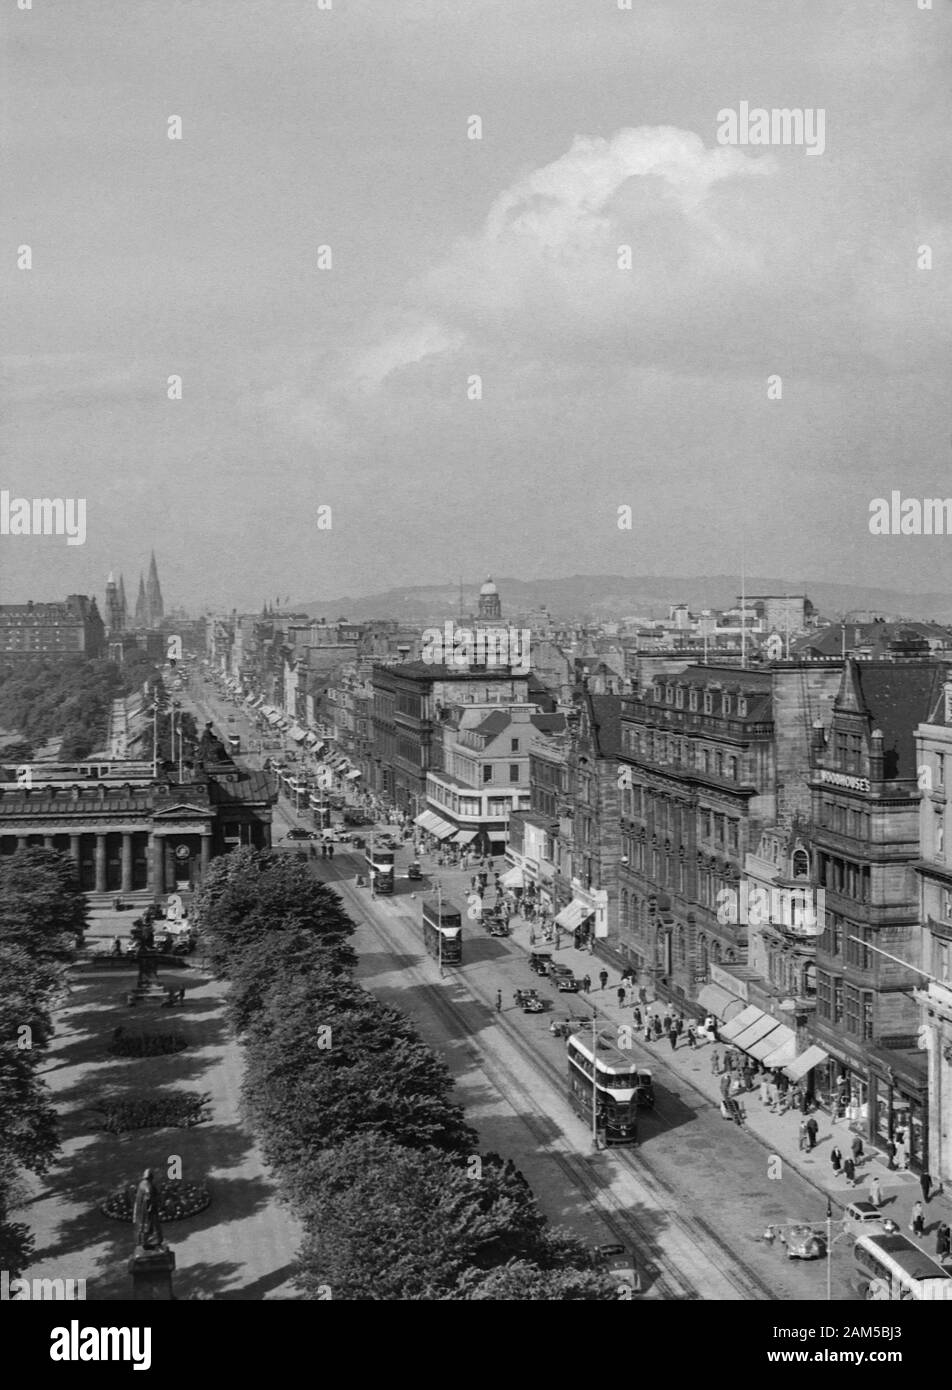 Princes Street, Édimbourg pendant les années 1950, remarque l'original des tramways sur la route Banque D'Images